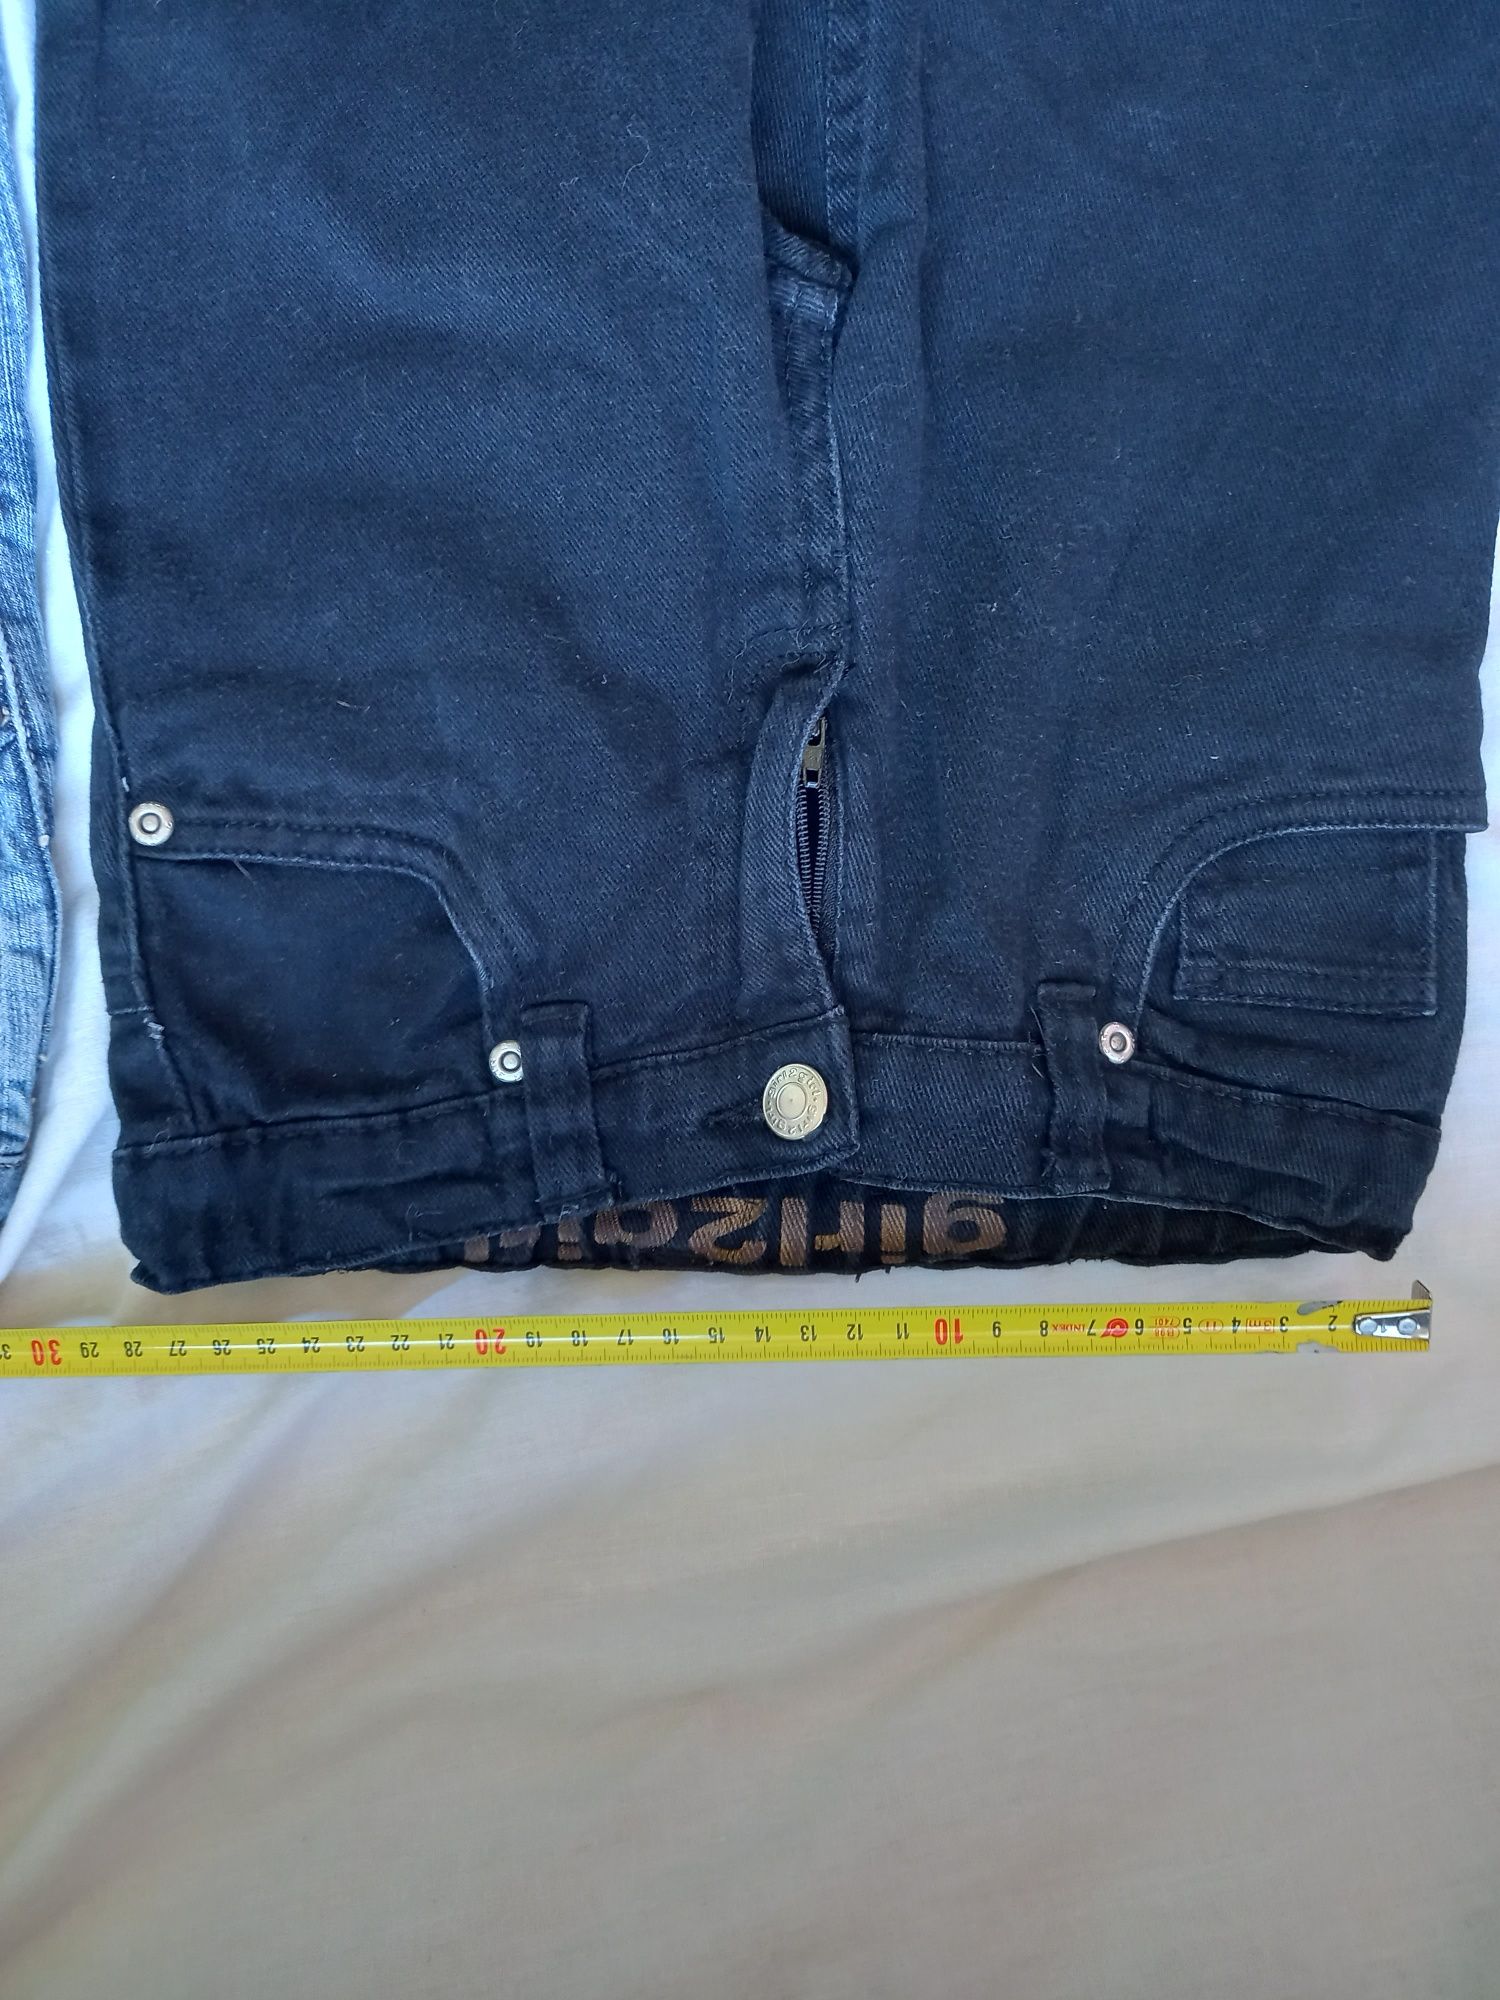 Spodnie dziewczęce jeans 110/116 2 pary Oliver girl gratis koszulka